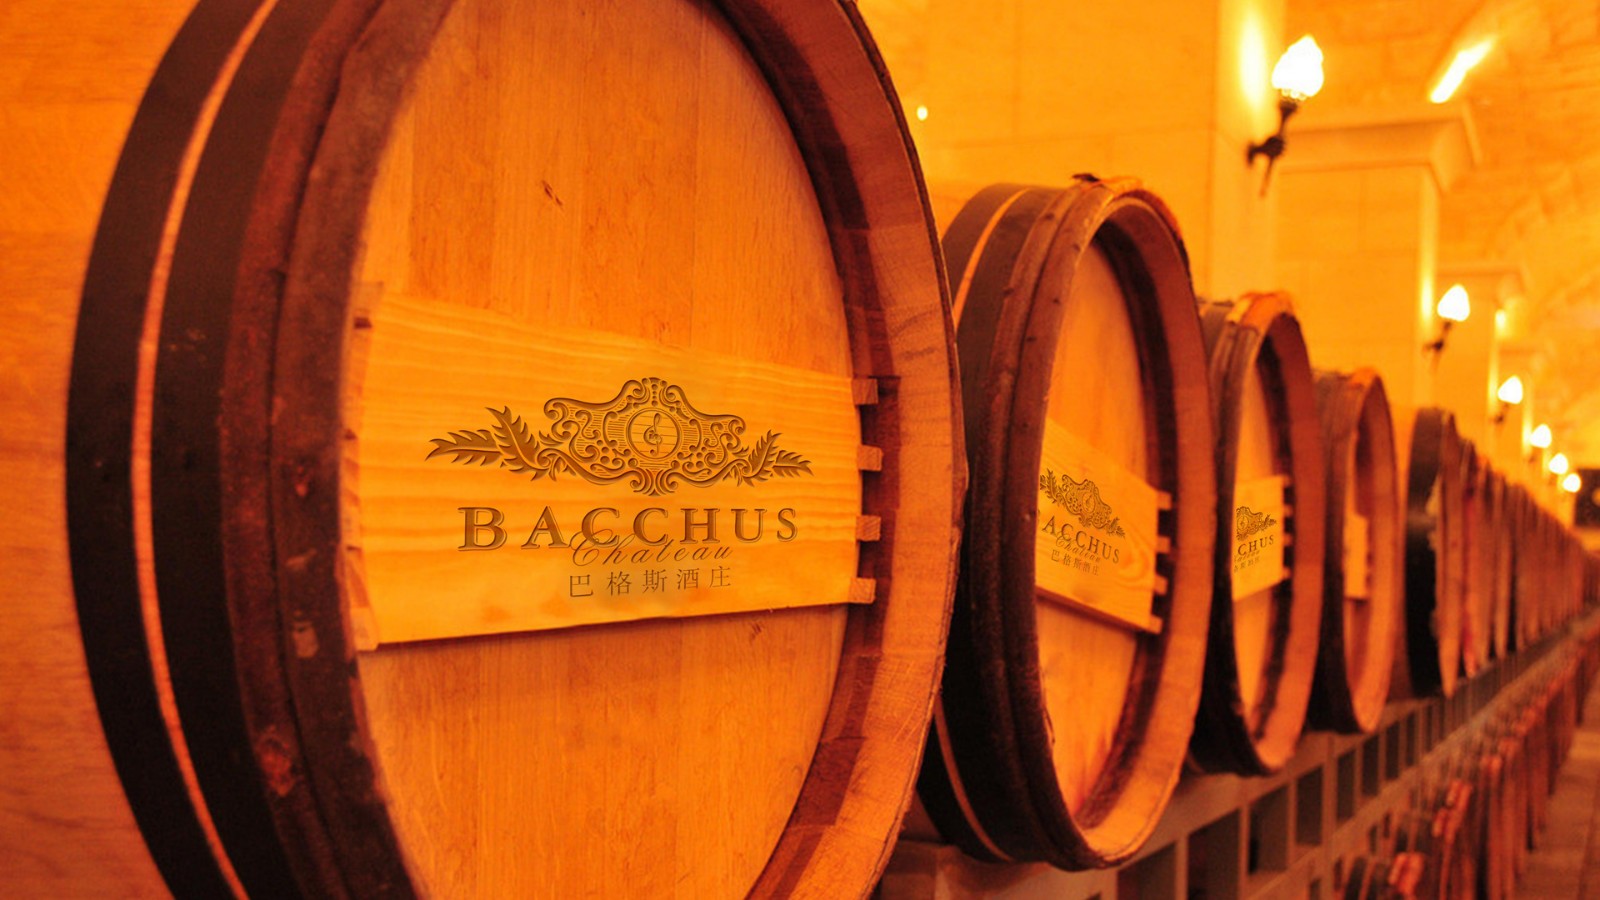 古一设计,巴格斯酒庄,红酒标志设计,logo设计